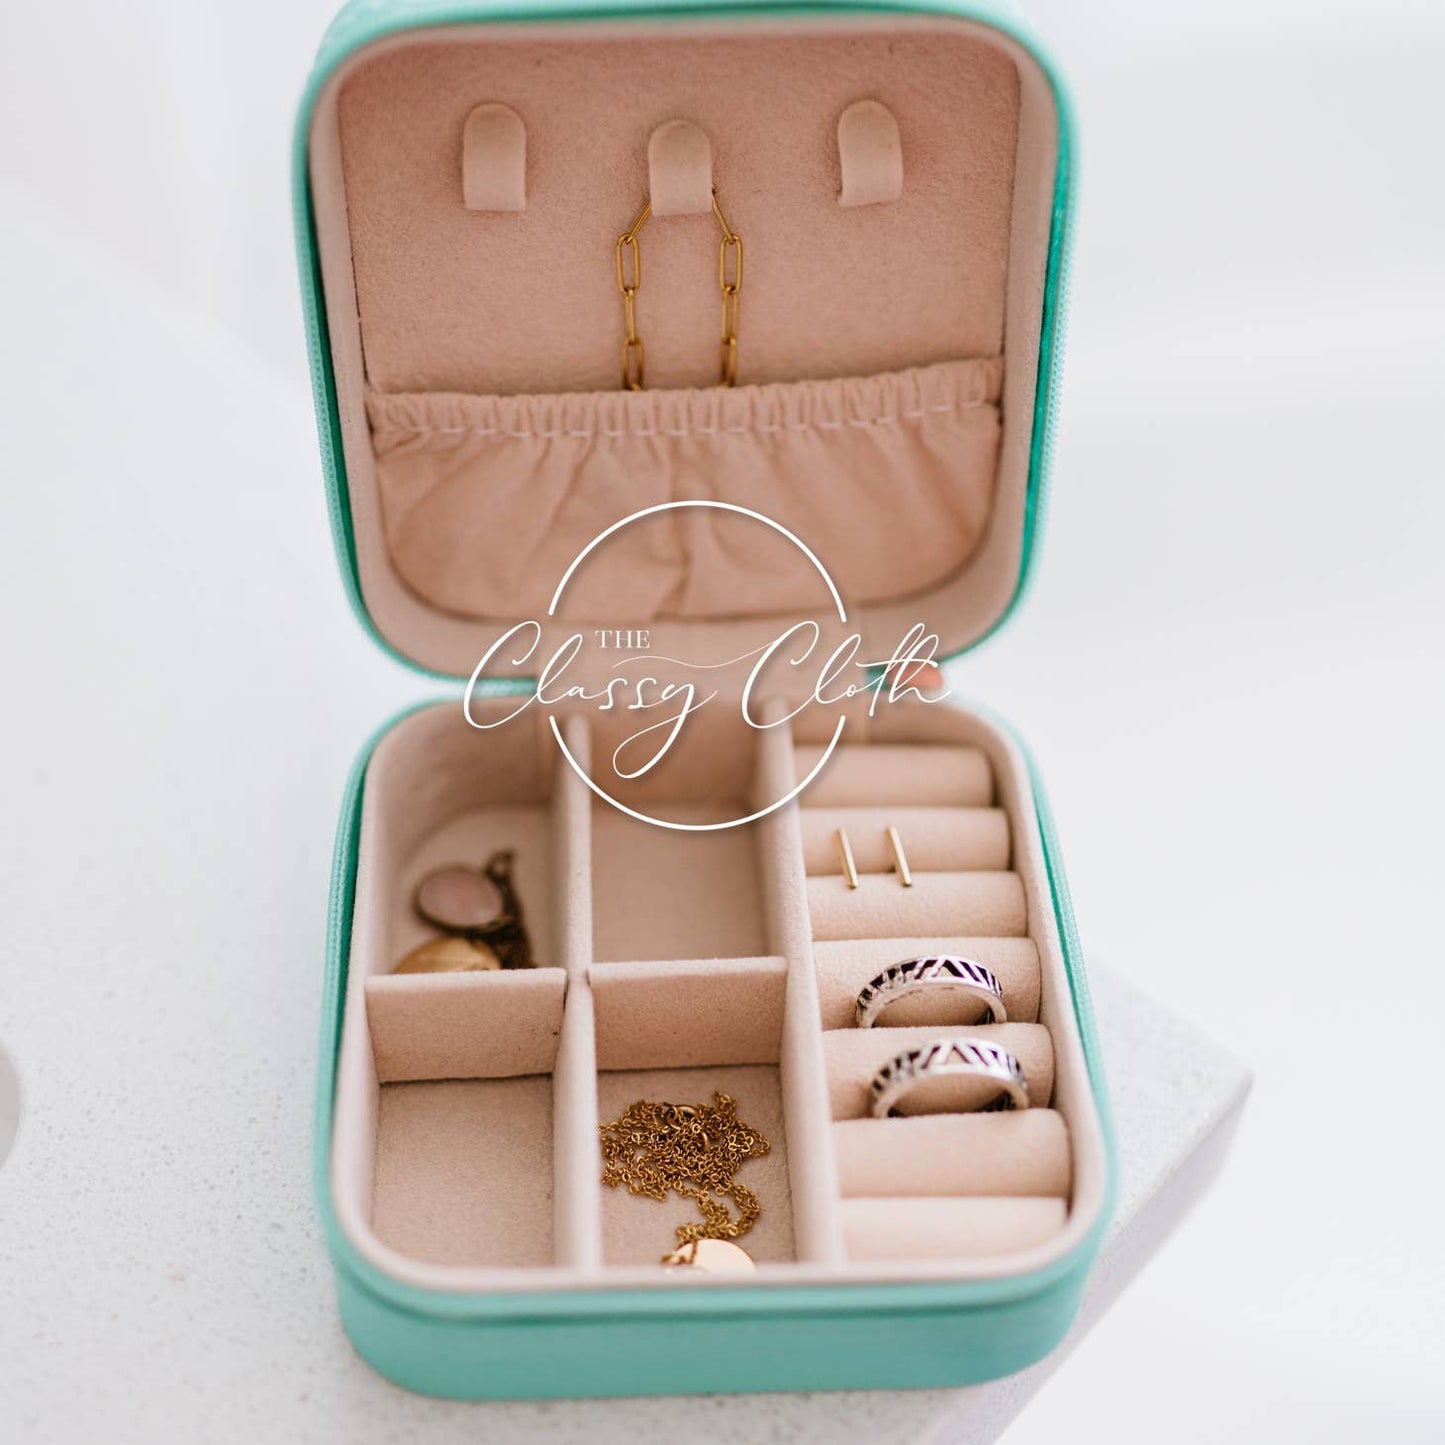 Mini Jewelry Box